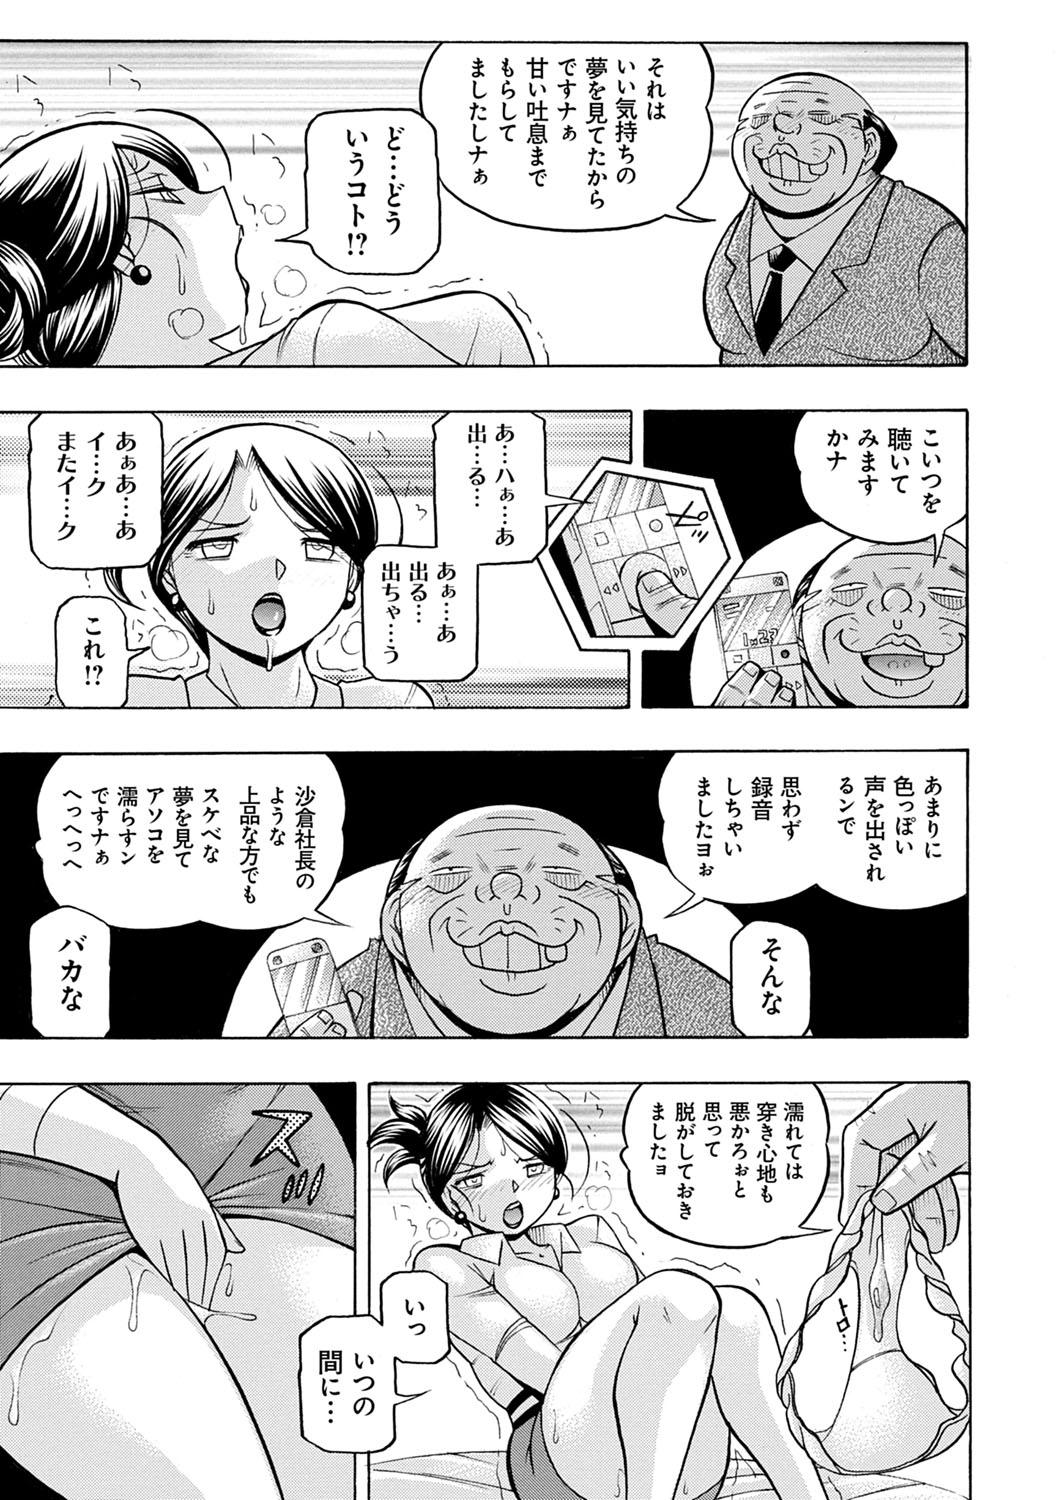 [Chuuka Naruto] Bijin Shachou Yuki ~Mitsuyaku no Nikusettai~ - YUKI of The Beautiful Chief Executive Officer ~The secret sweet treaty by sexual reception~ [Digital] 47